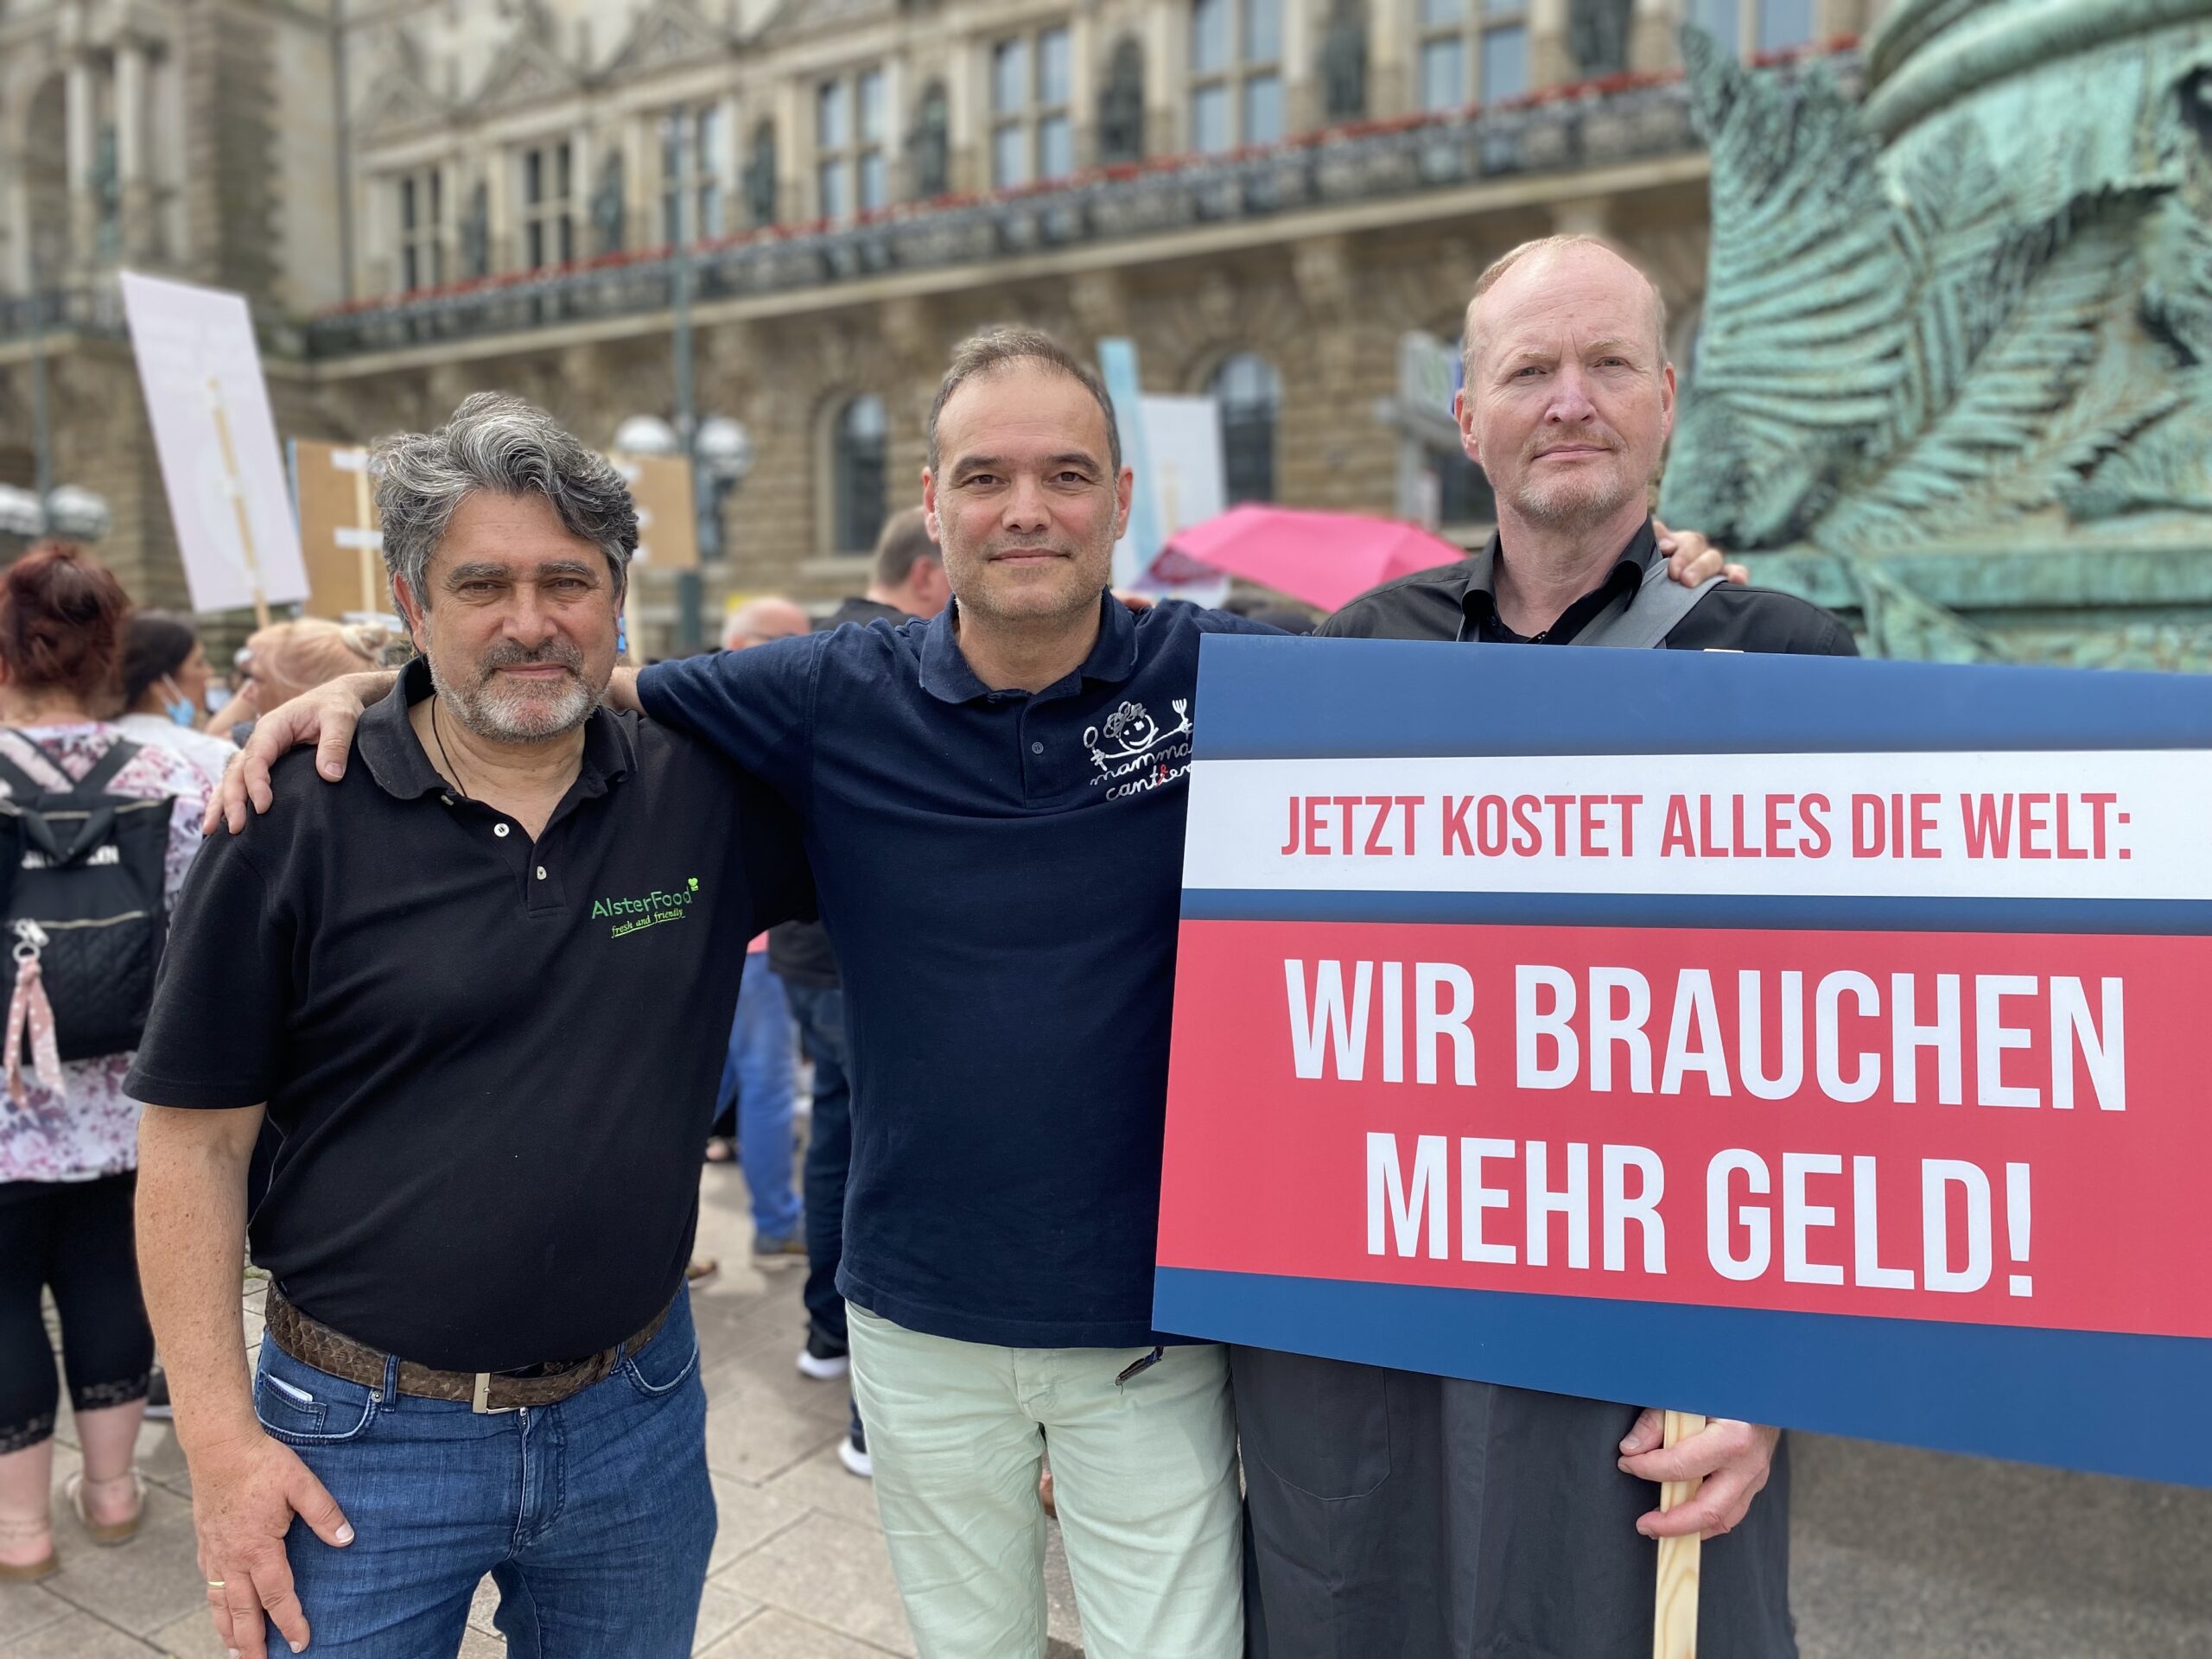 Die Schulcaterer Amedeus Hajek, Okan Saiti und Volker Jahr vor dem Rathaus